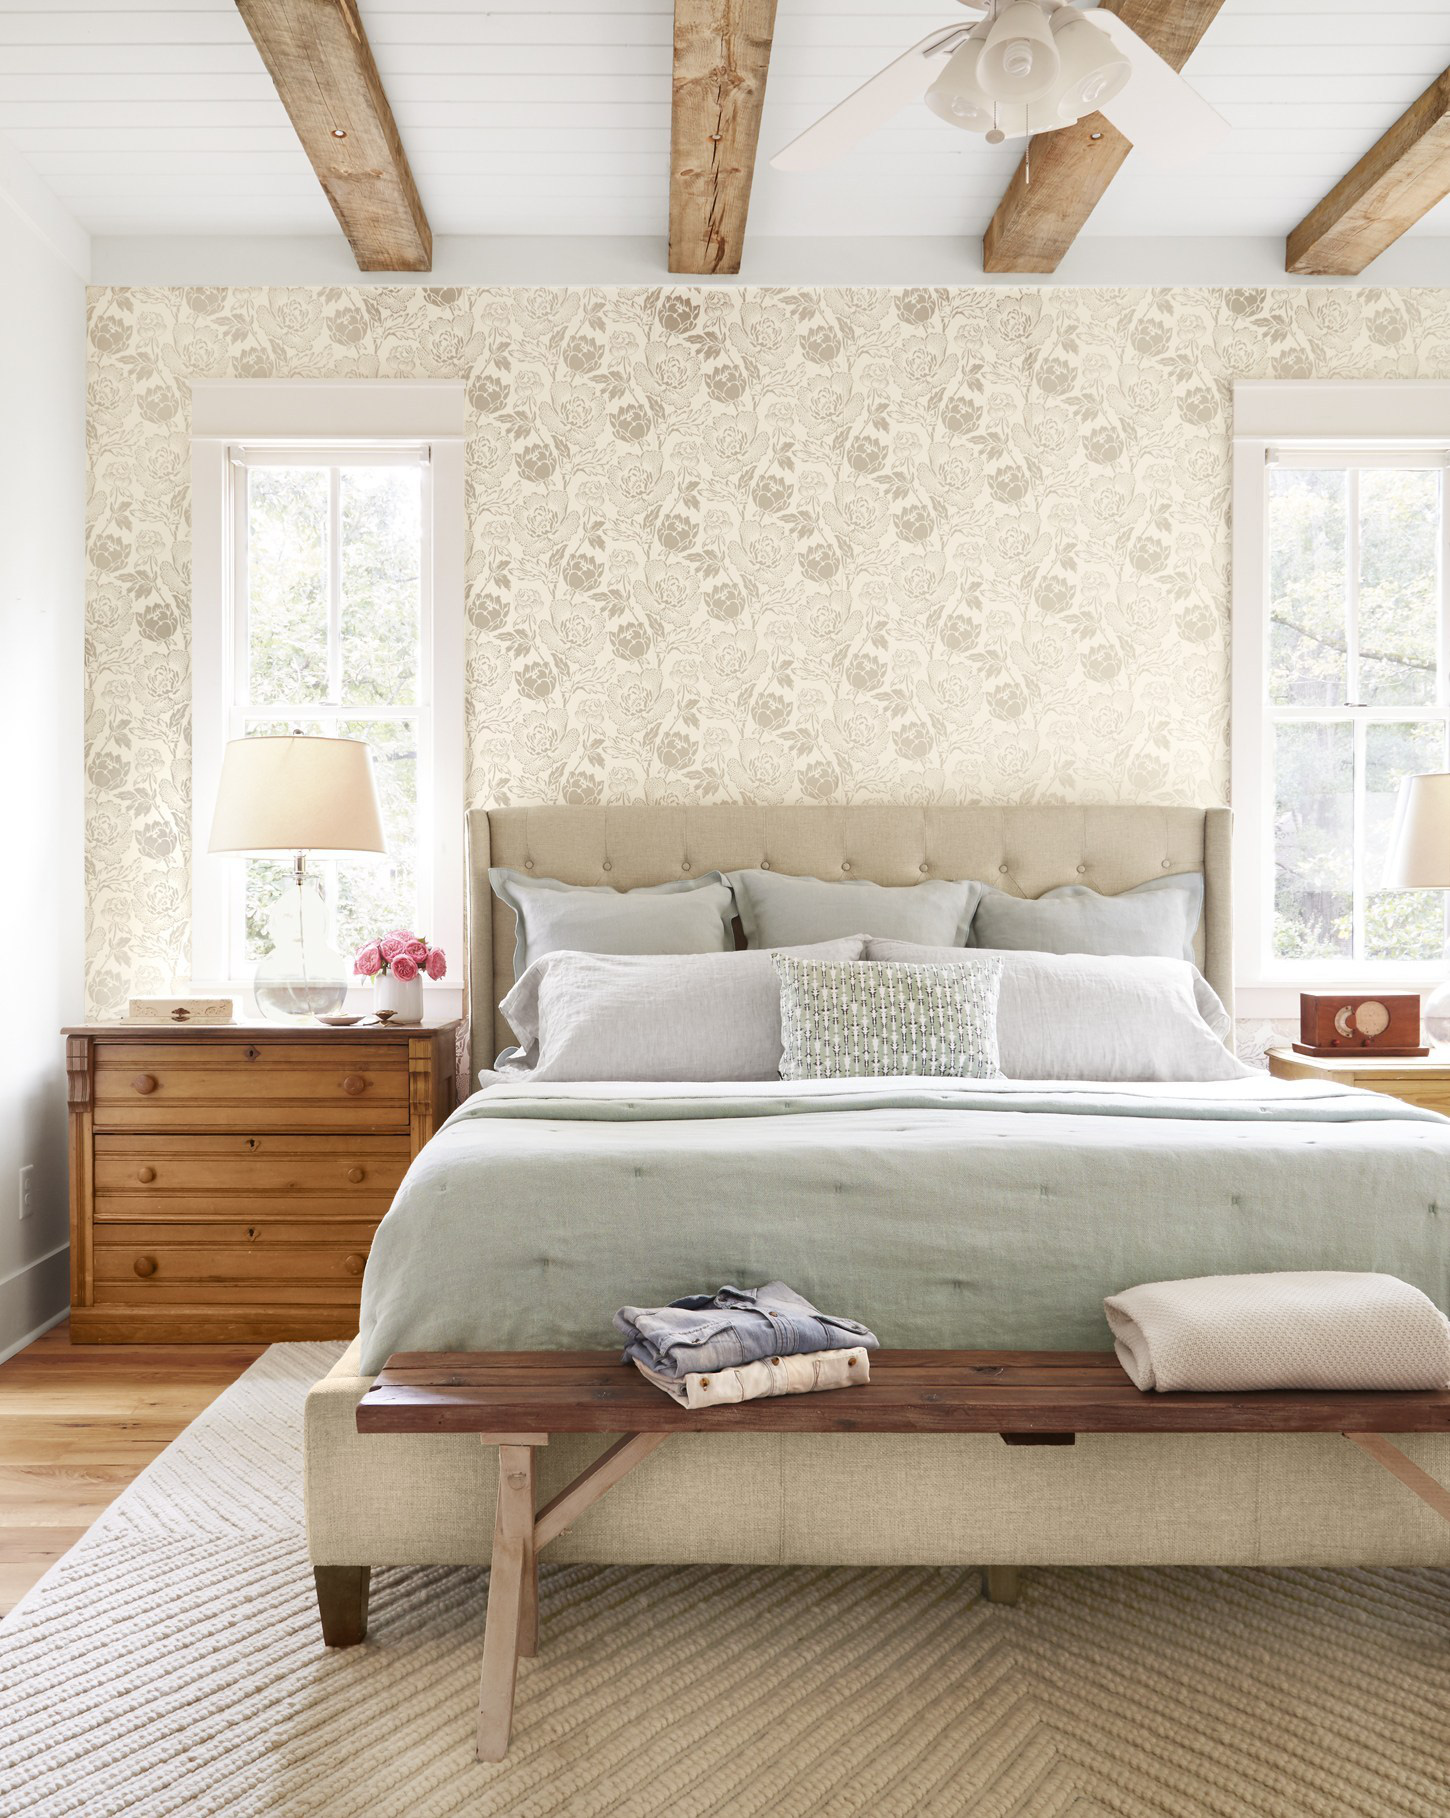 Hình ảnh phòng ngủ với giường nệm êm ái, cạnh đó là tủ ngăn kéo bằng gỗ, giấy dán tường đầu giường, dầm gỗ mộc mạc